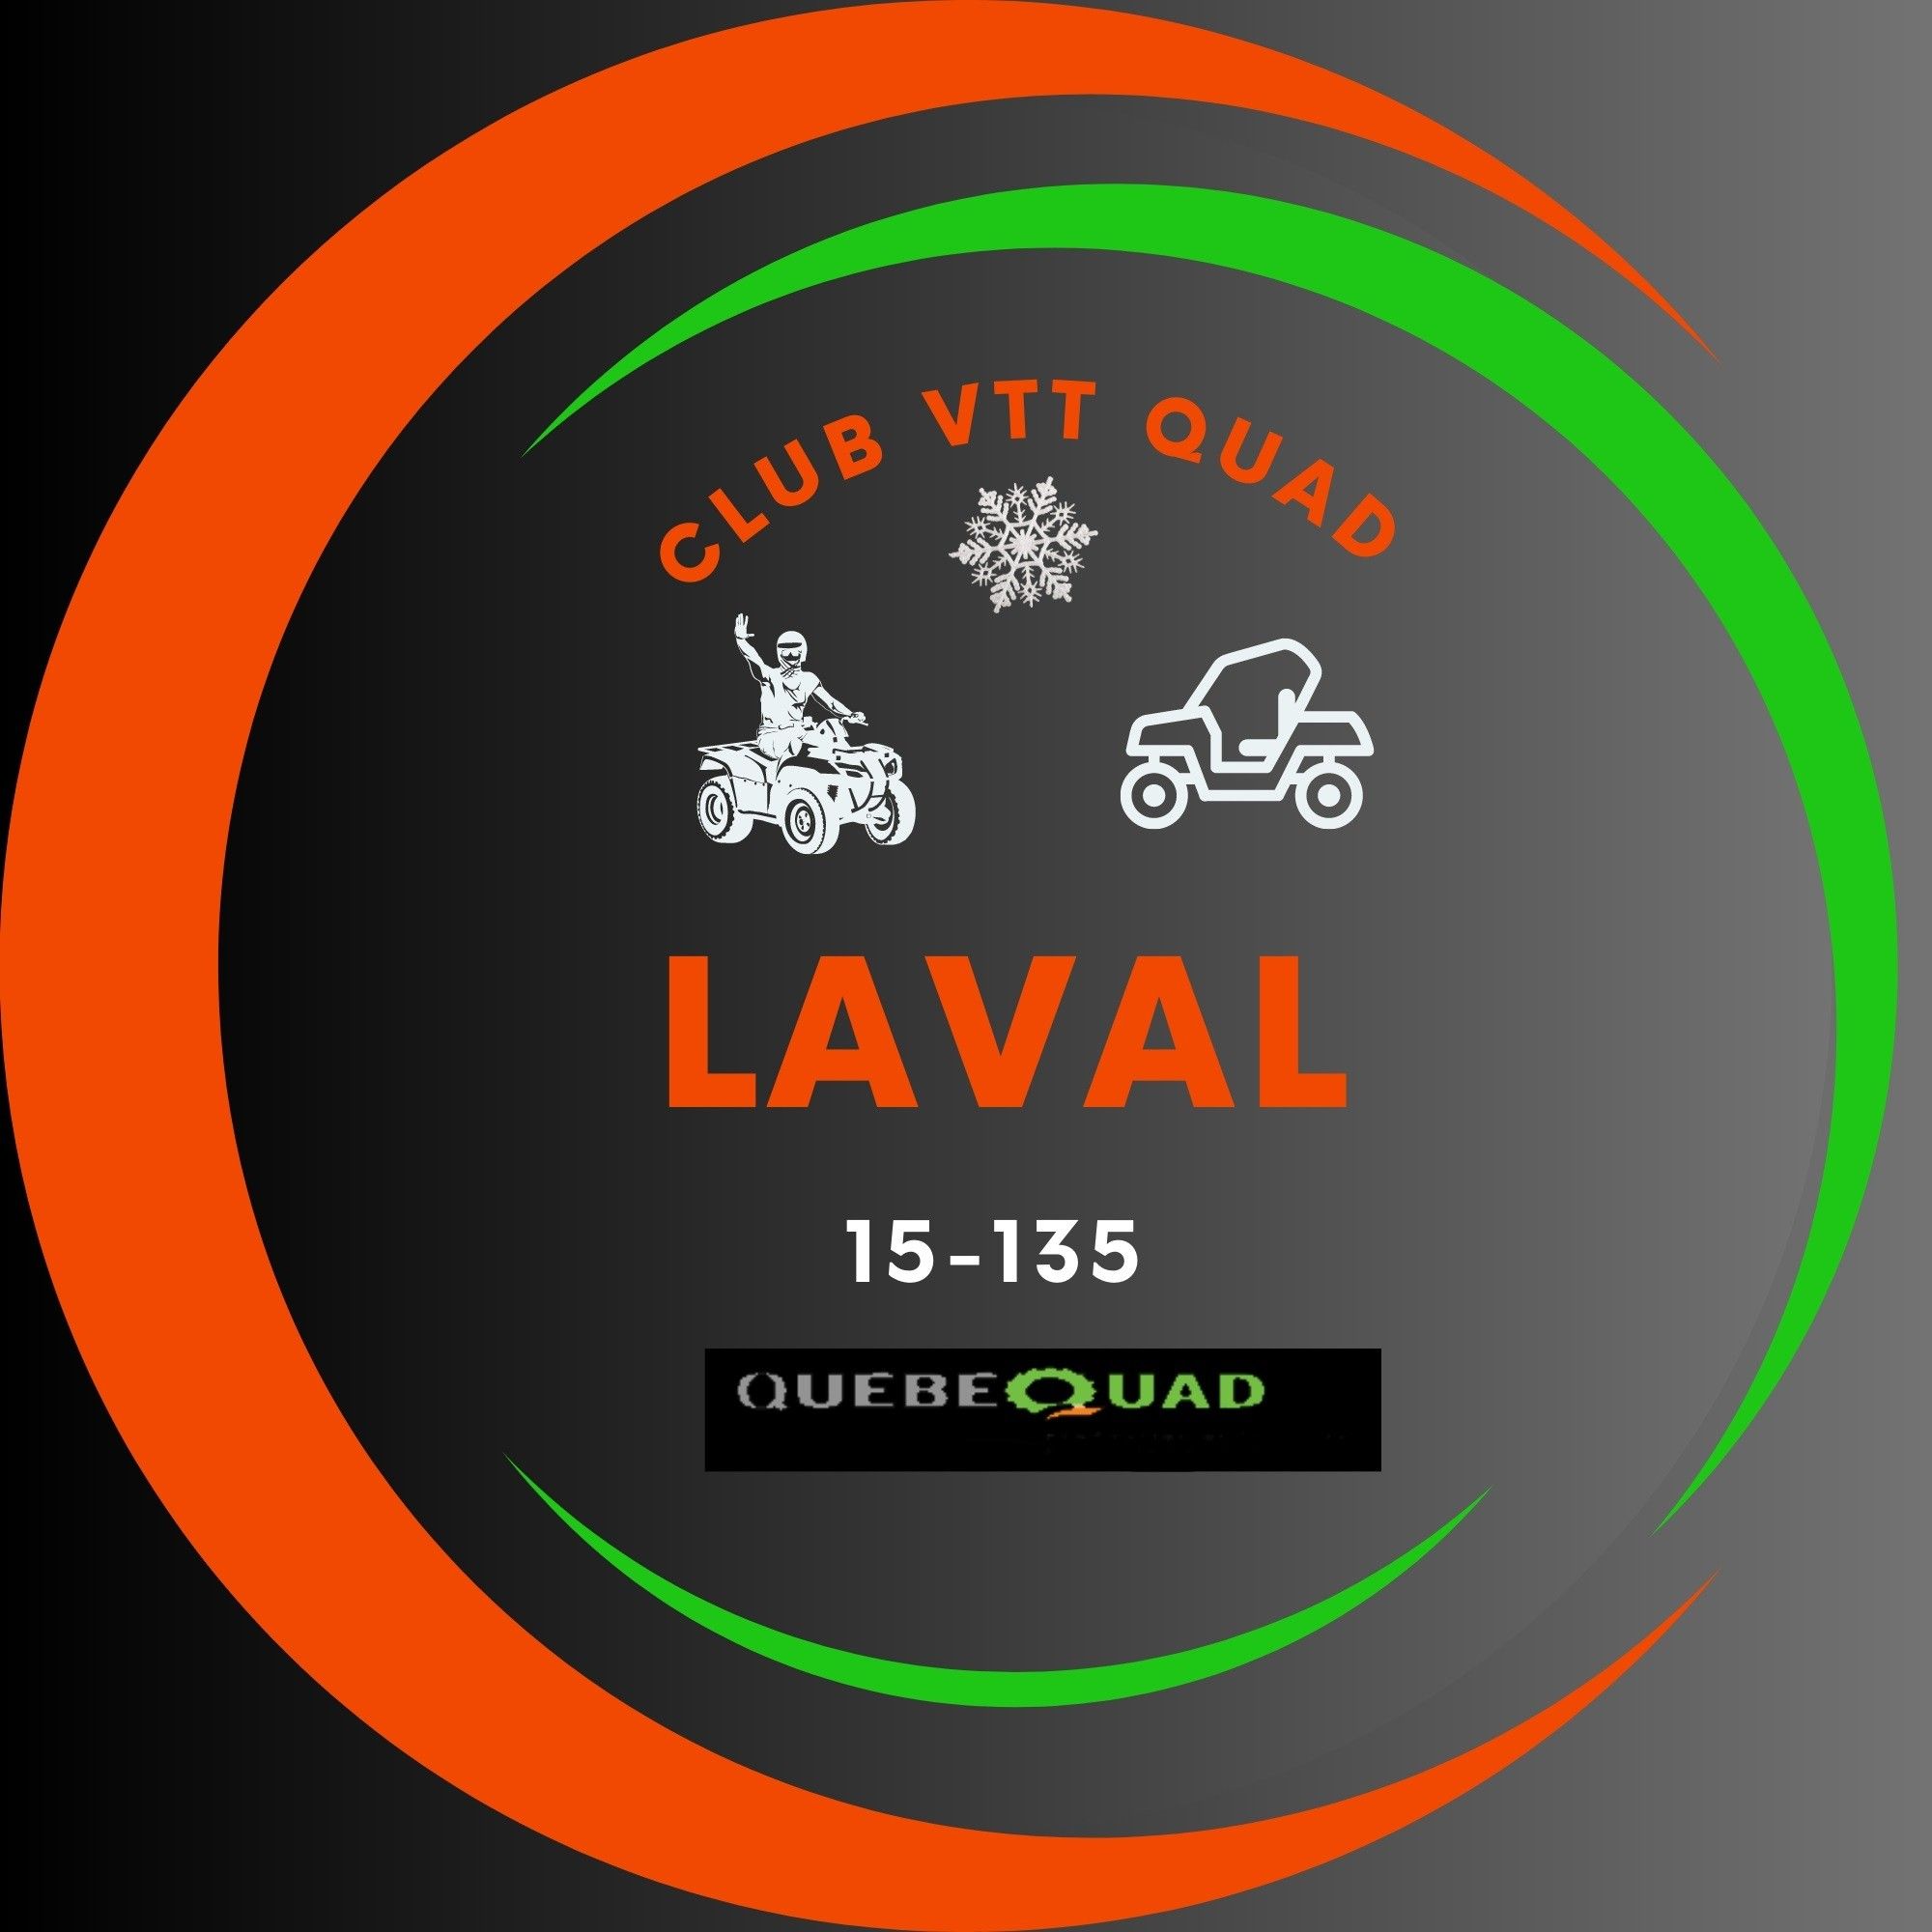 Logo 15-135 Club Vtt Quad Laval 